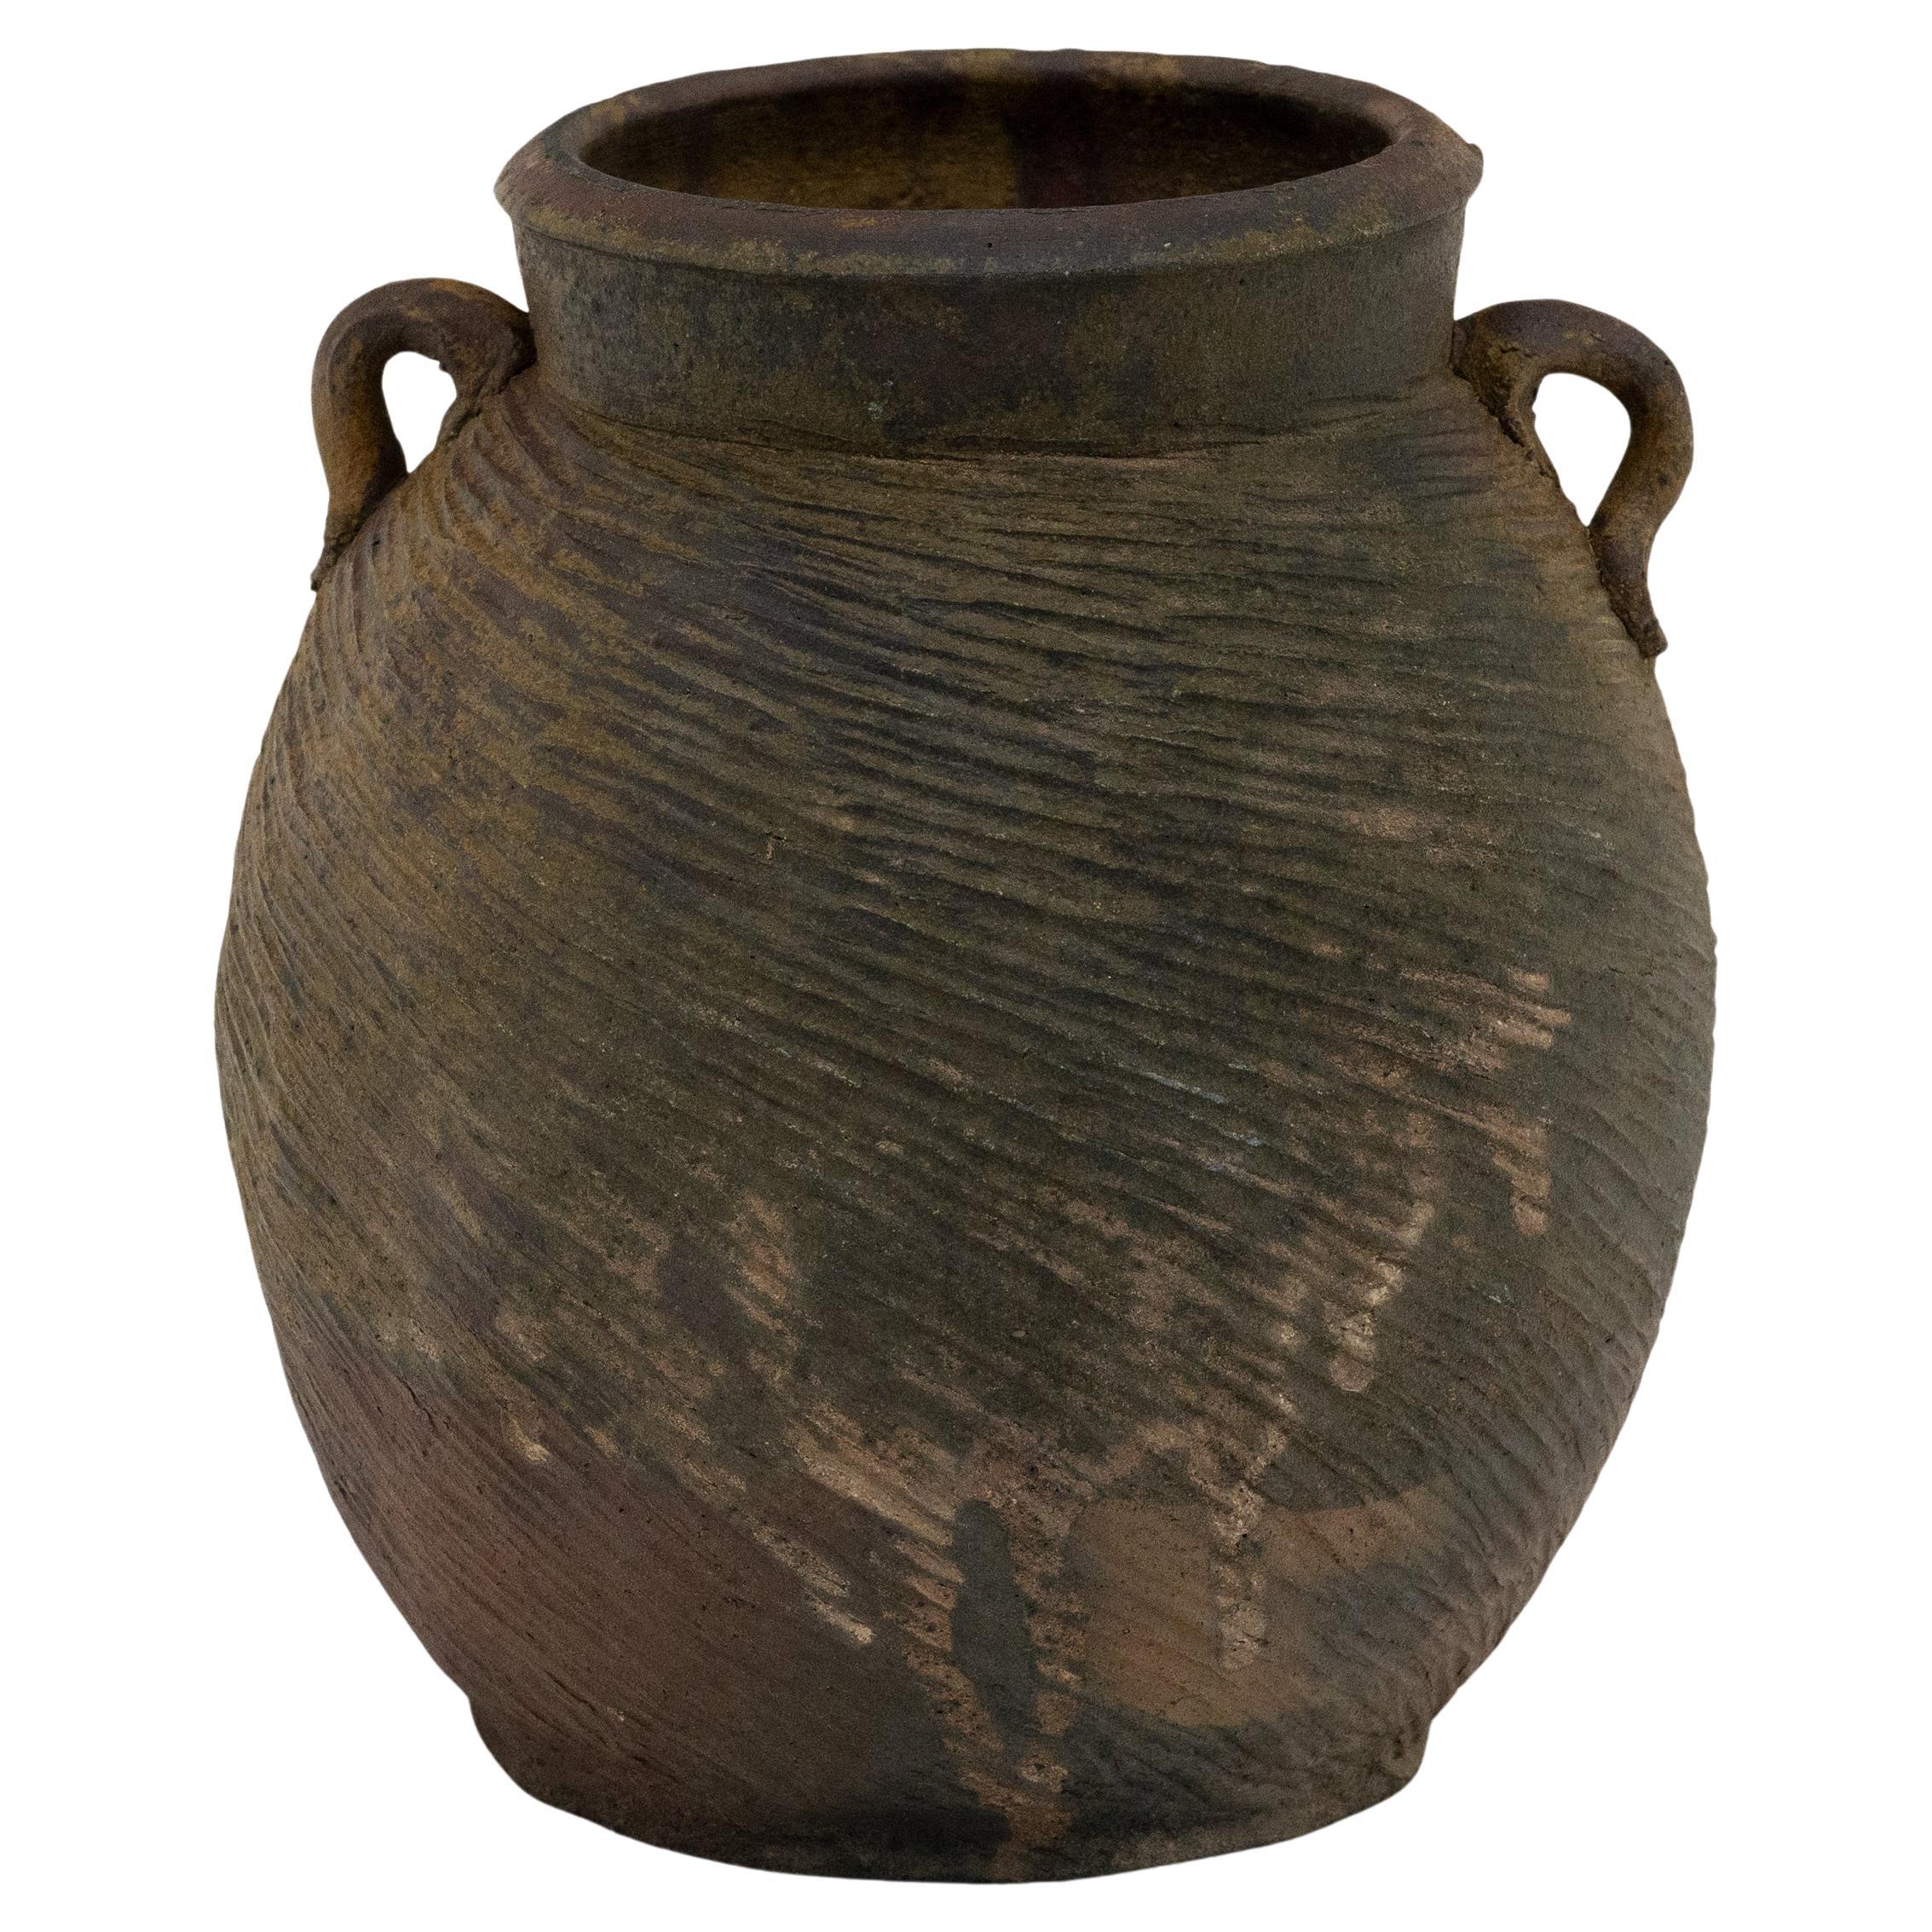 Chinese Yunnan Lobed Pot, c. 1800